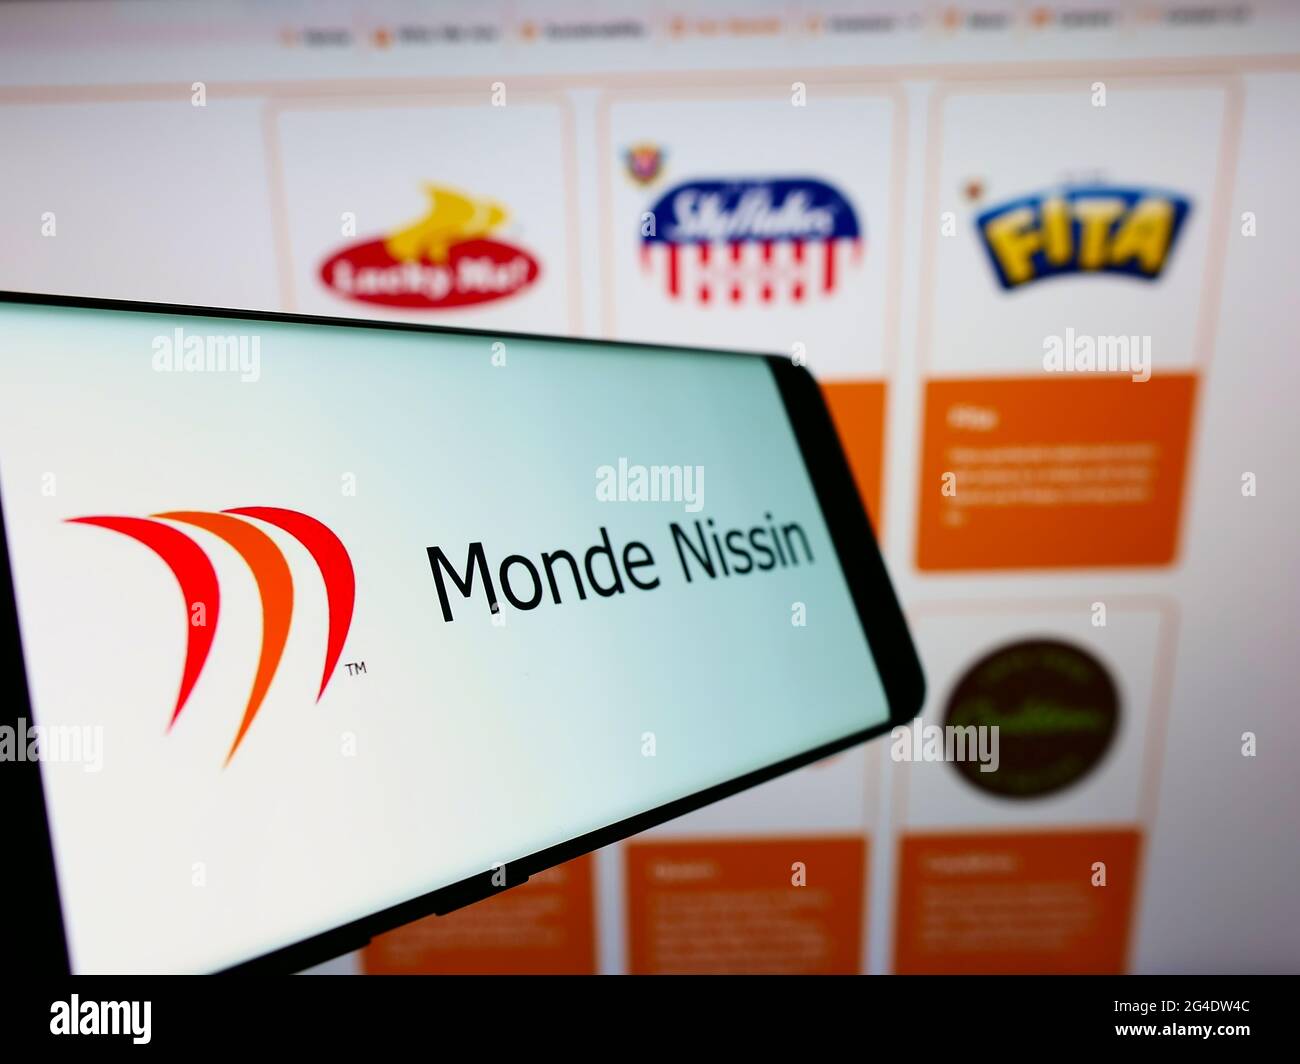 Telefono cellulare con logo della società filippina alimentare Monde Nissin Corporation sullo schermo di fronte al sito web. Mettere a fuoco al centro-sinistra del display del telefono. Foto Stock